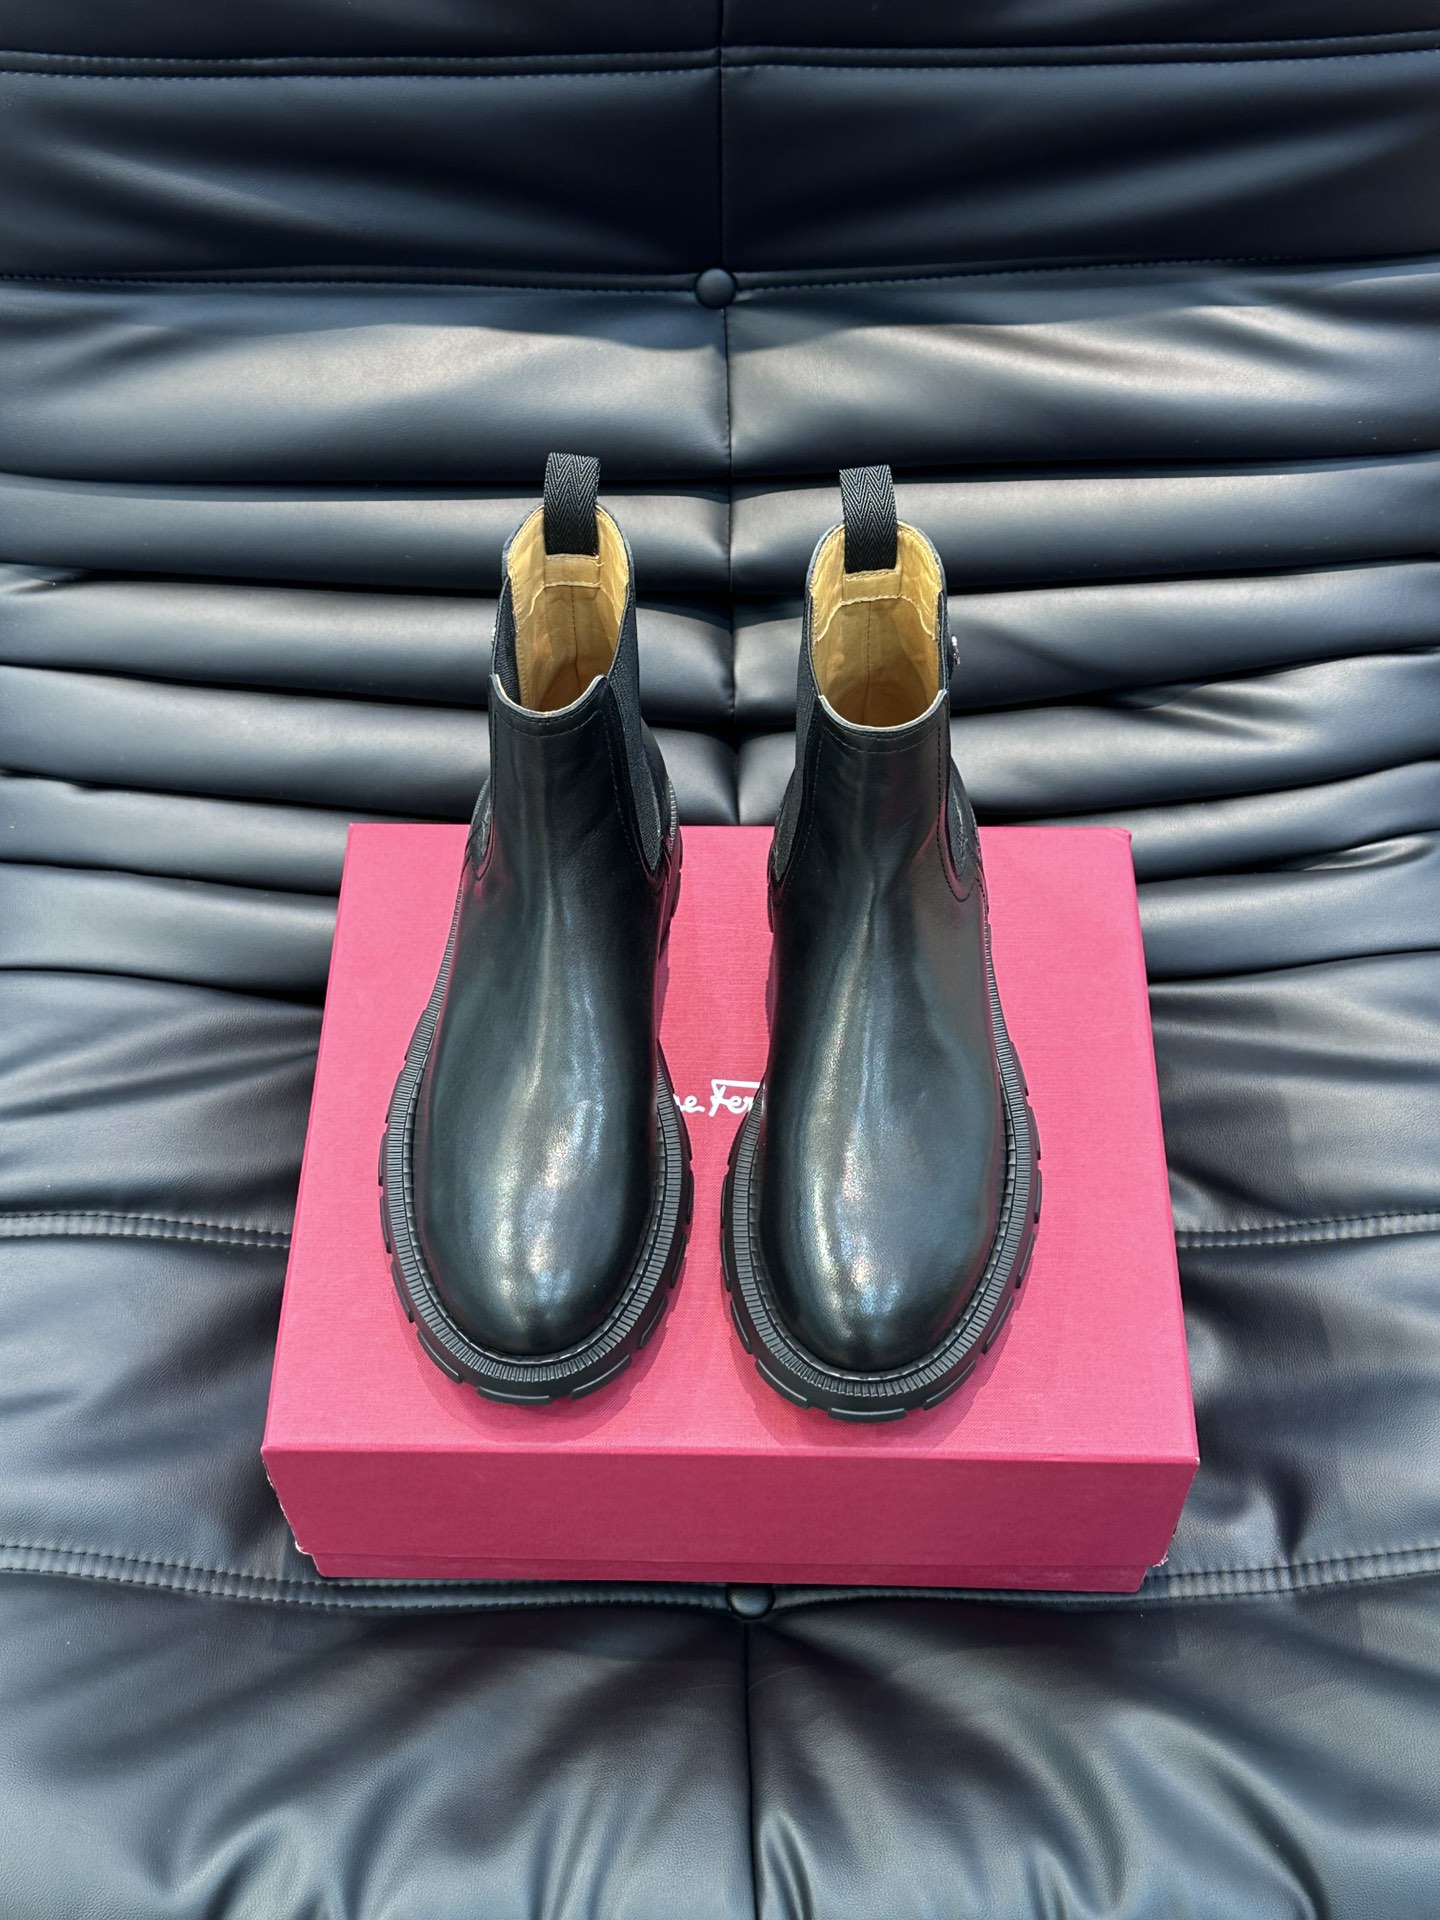 ️️Ferraga*菲拉格慕男士秋冬及踝靴体现经典的优雅气质高雅的外观搭配修长的版型进口牛皮打造舒适轻盈